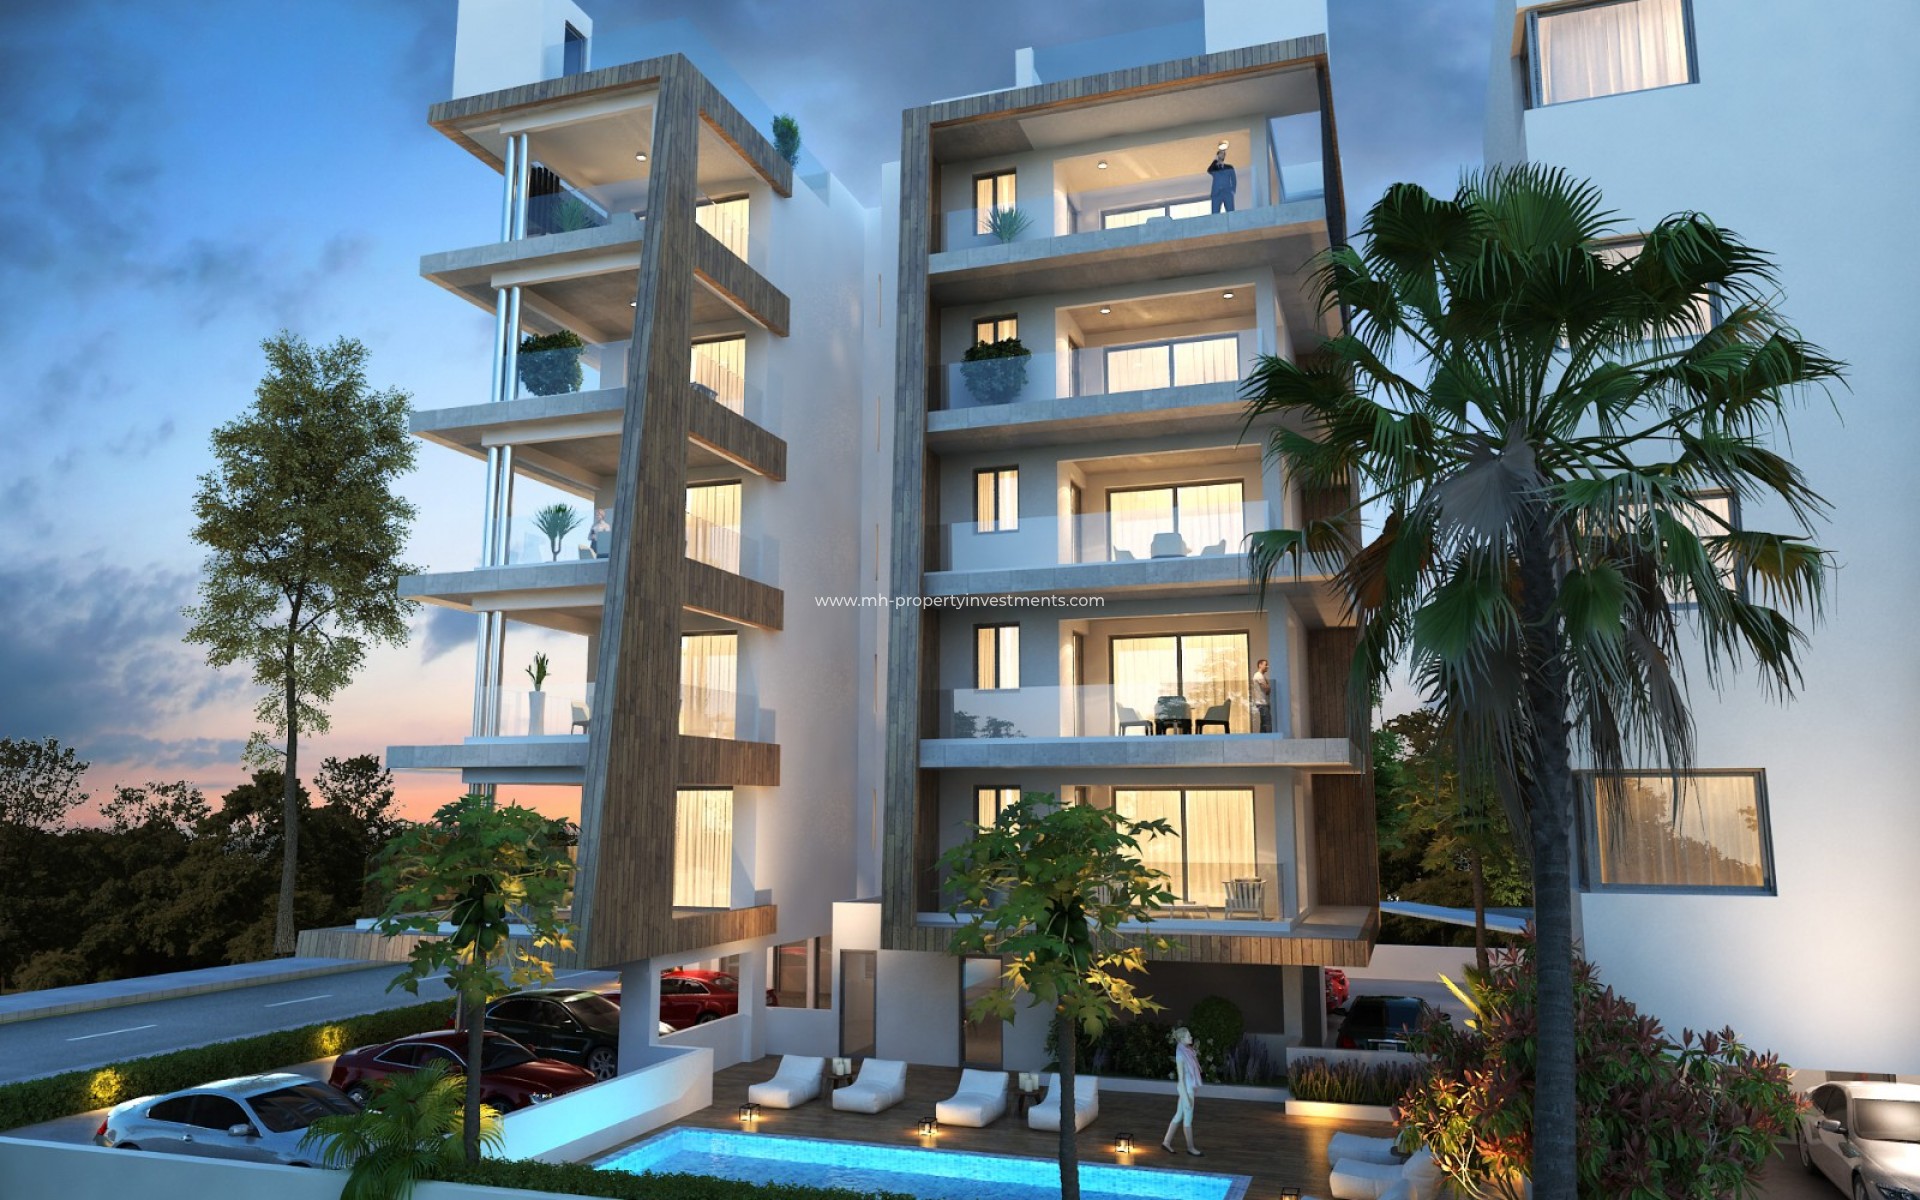 en cours de construction - Apartment - Larnaca - Harbor